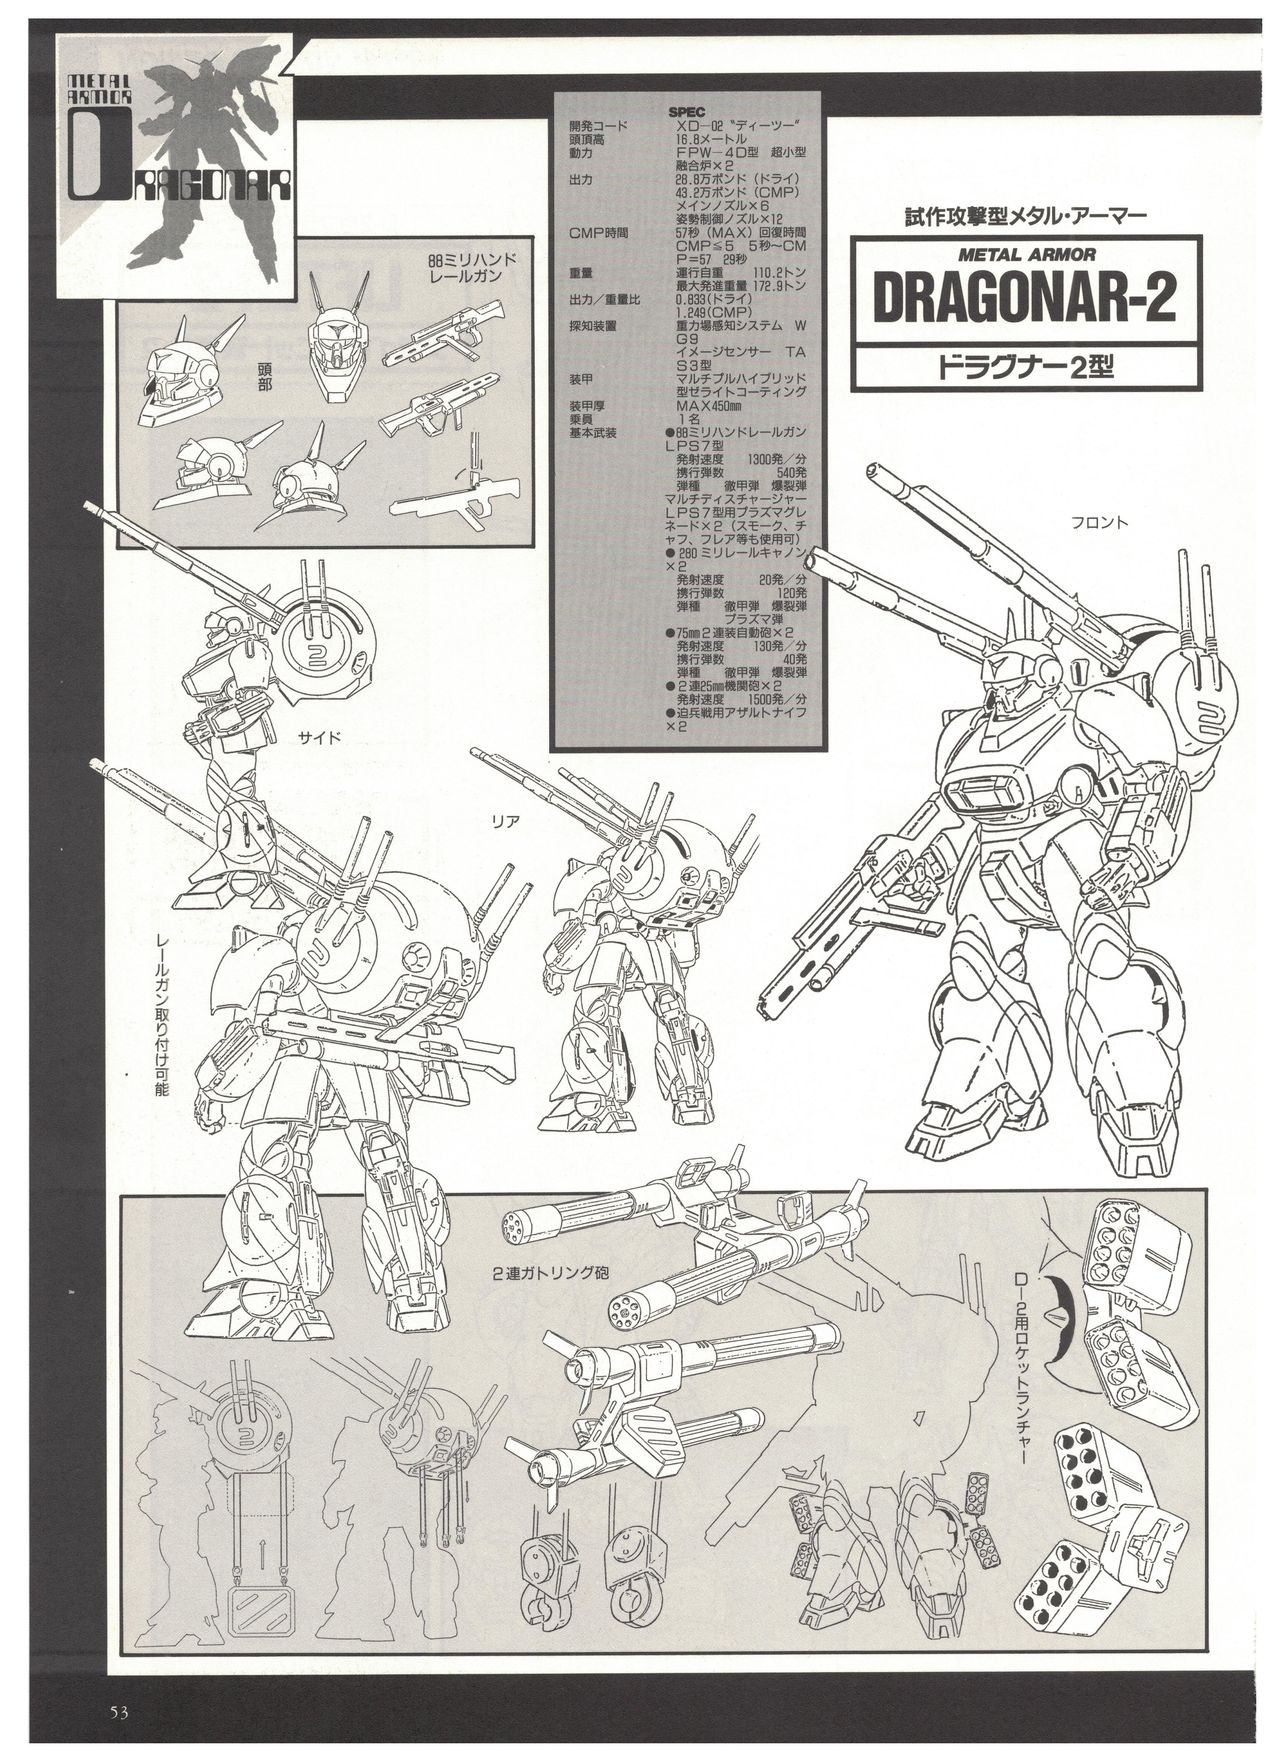 Metal Armor Dragonar (B-Club Special) 42